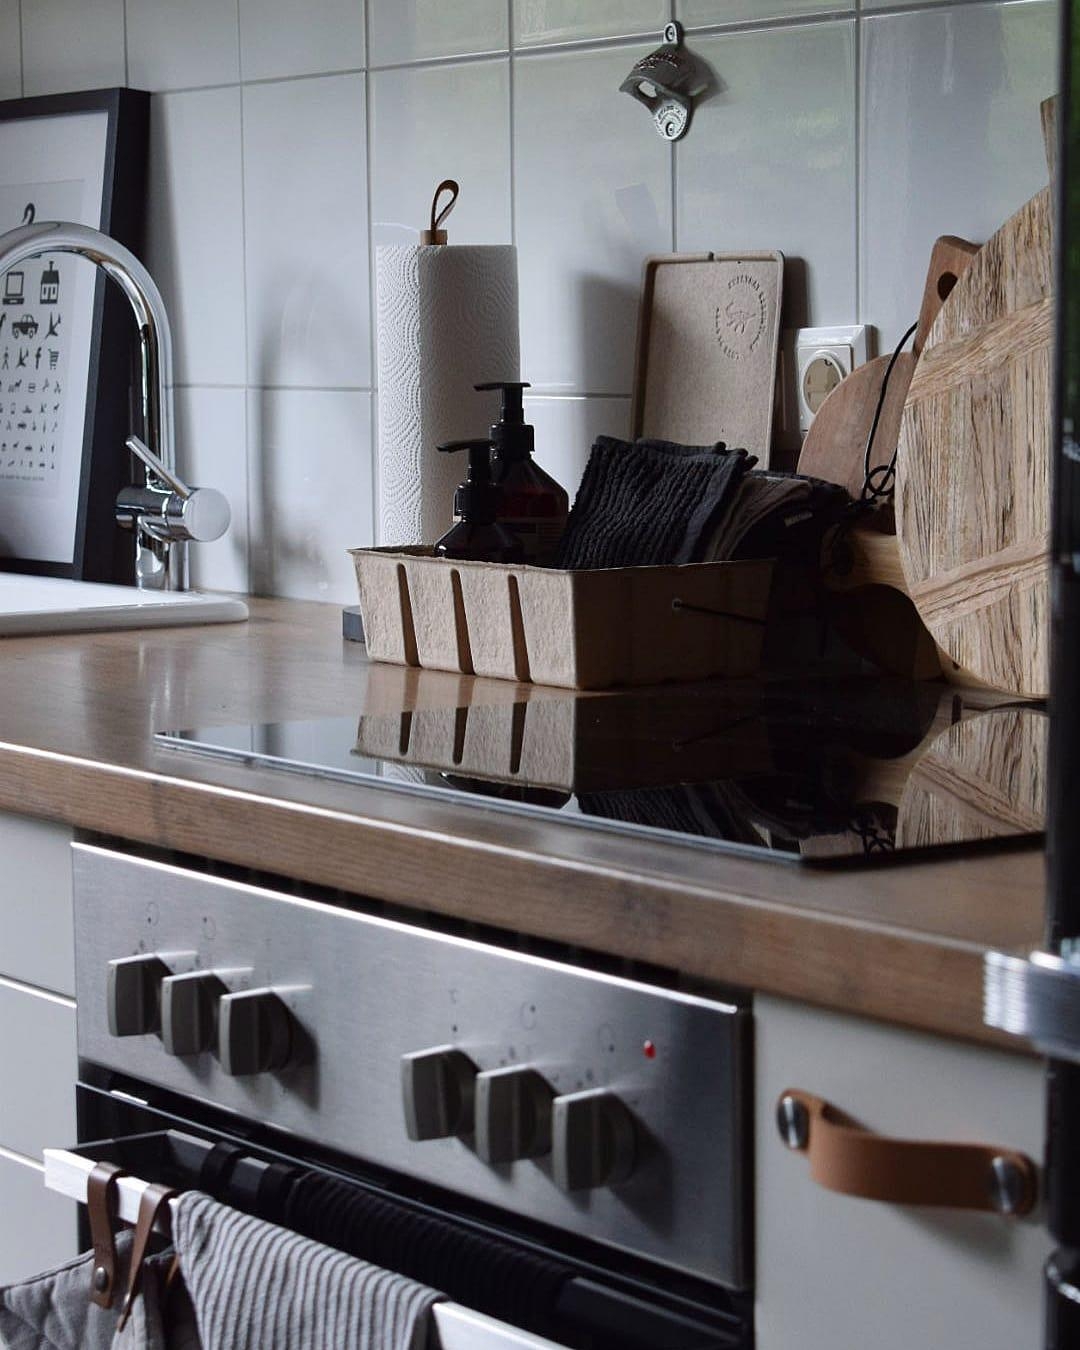 #details #küchendetails #küche #kitchen #home #wohnen #blackinterior